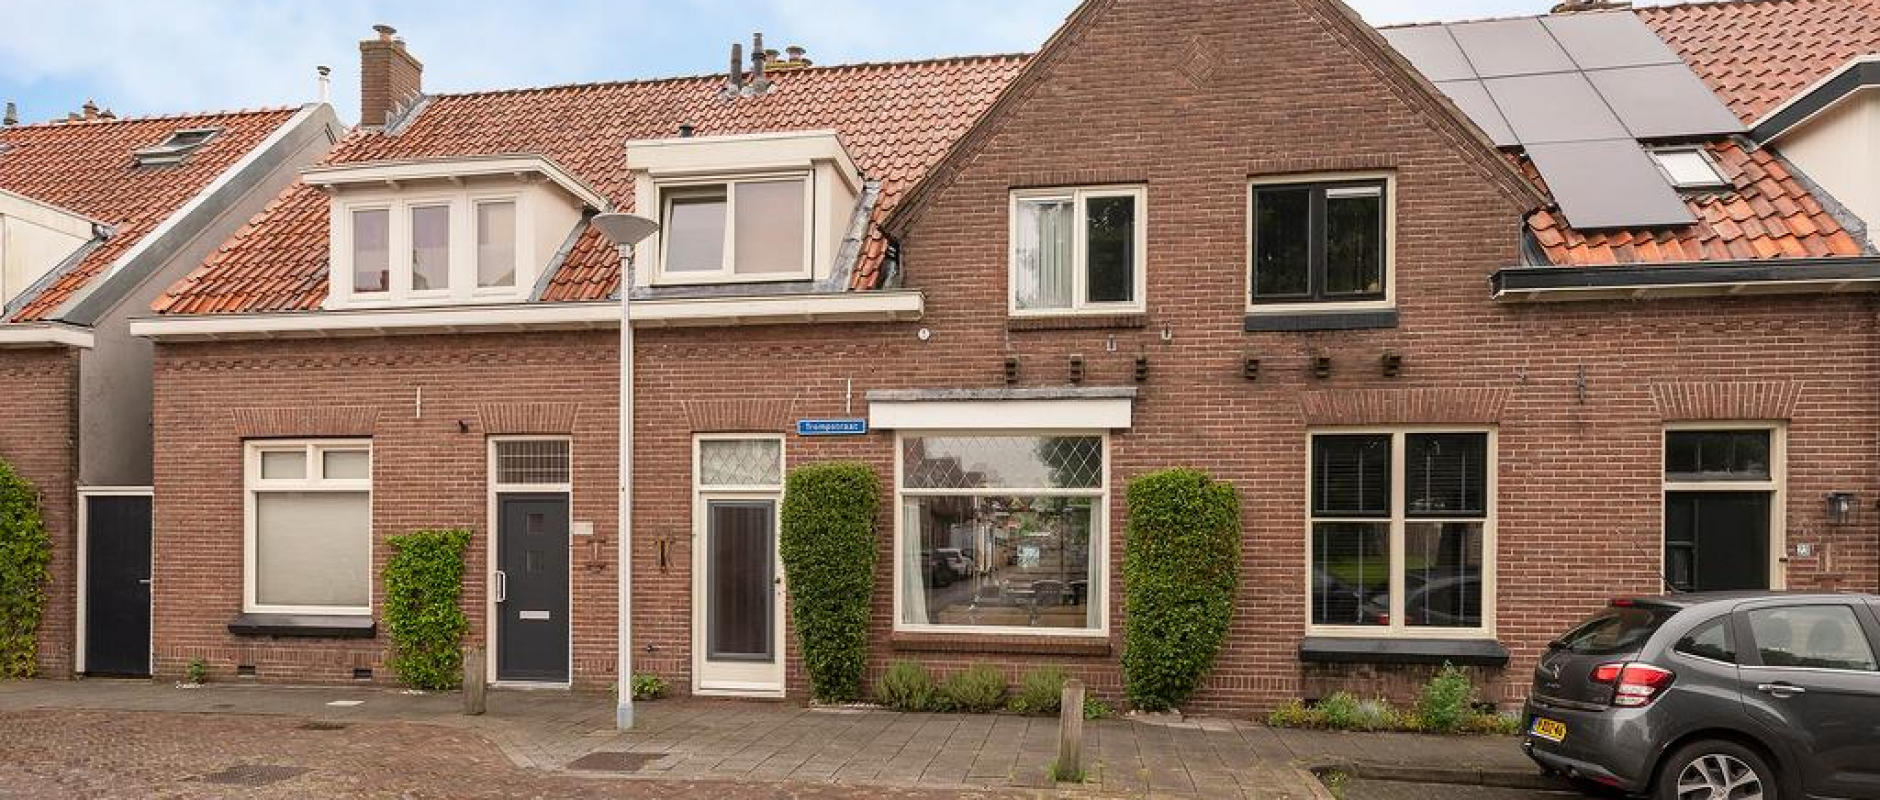 Woning te koop aan de Trompstraat 21 te Zwolle